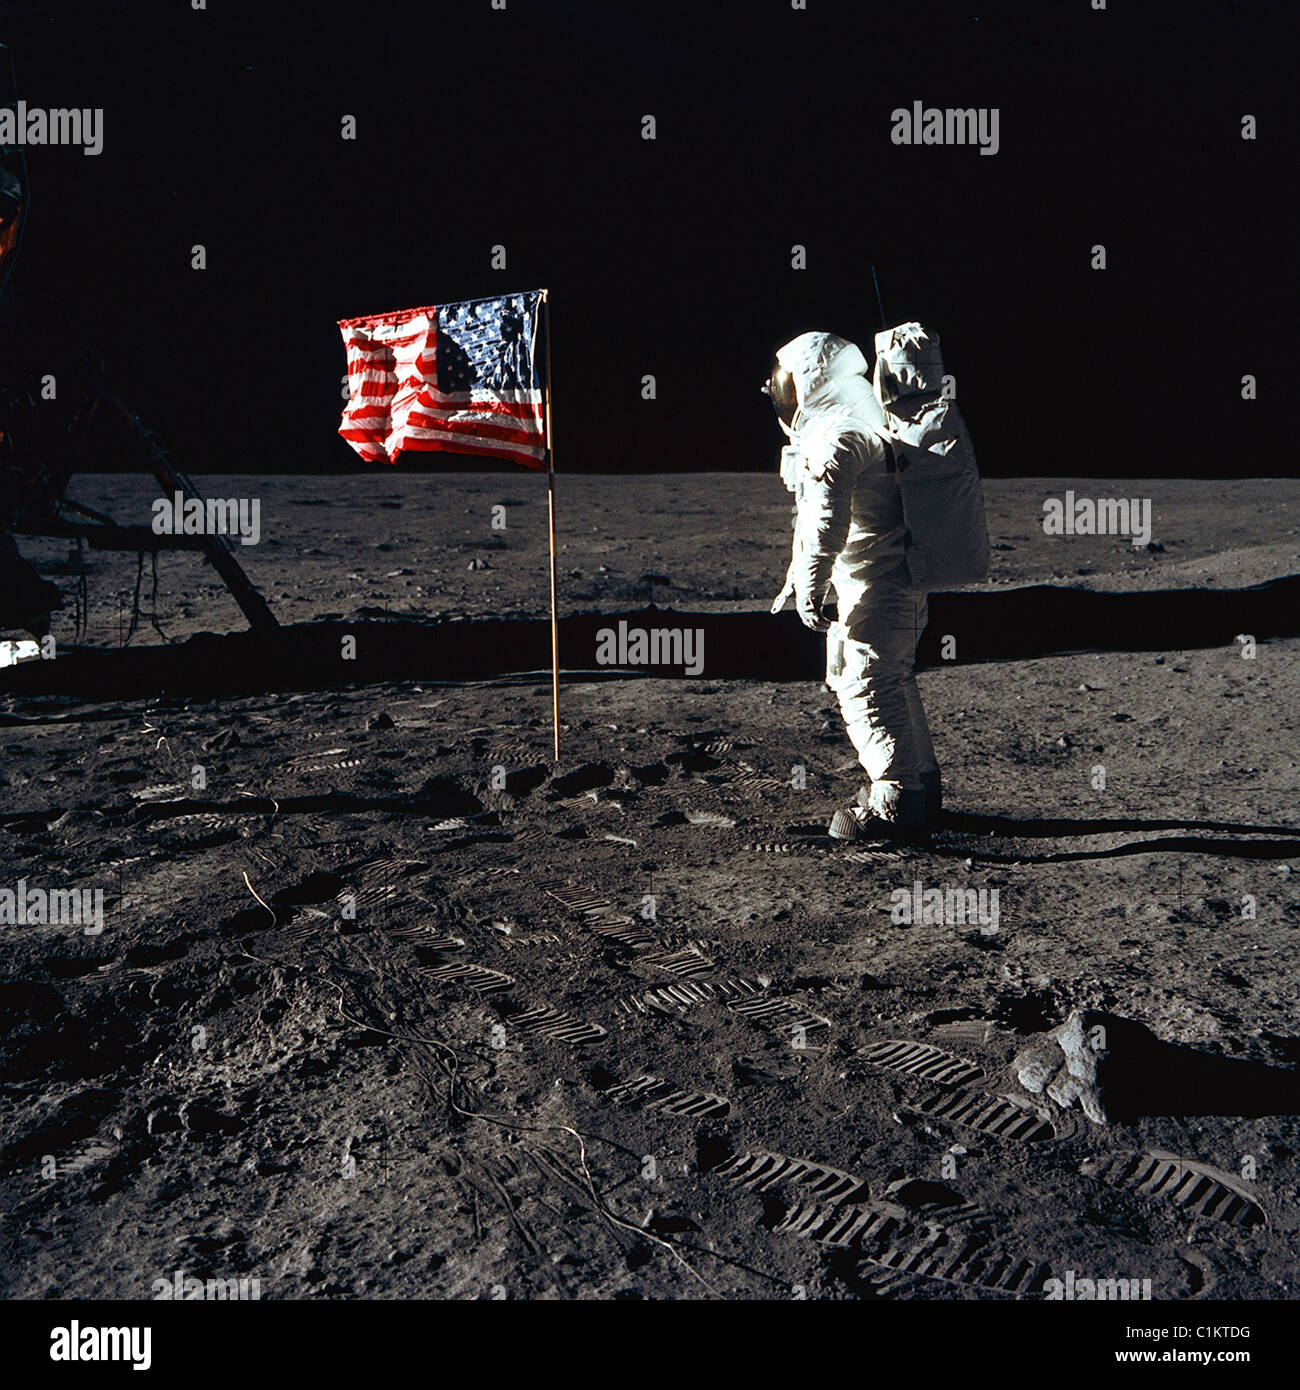 Apollo 11 Mann auf dem Mond buzz Aldrin amerikanische Flagge 1969 Mond Mond Landung Astronaut amerikanischen USA Stockfoto